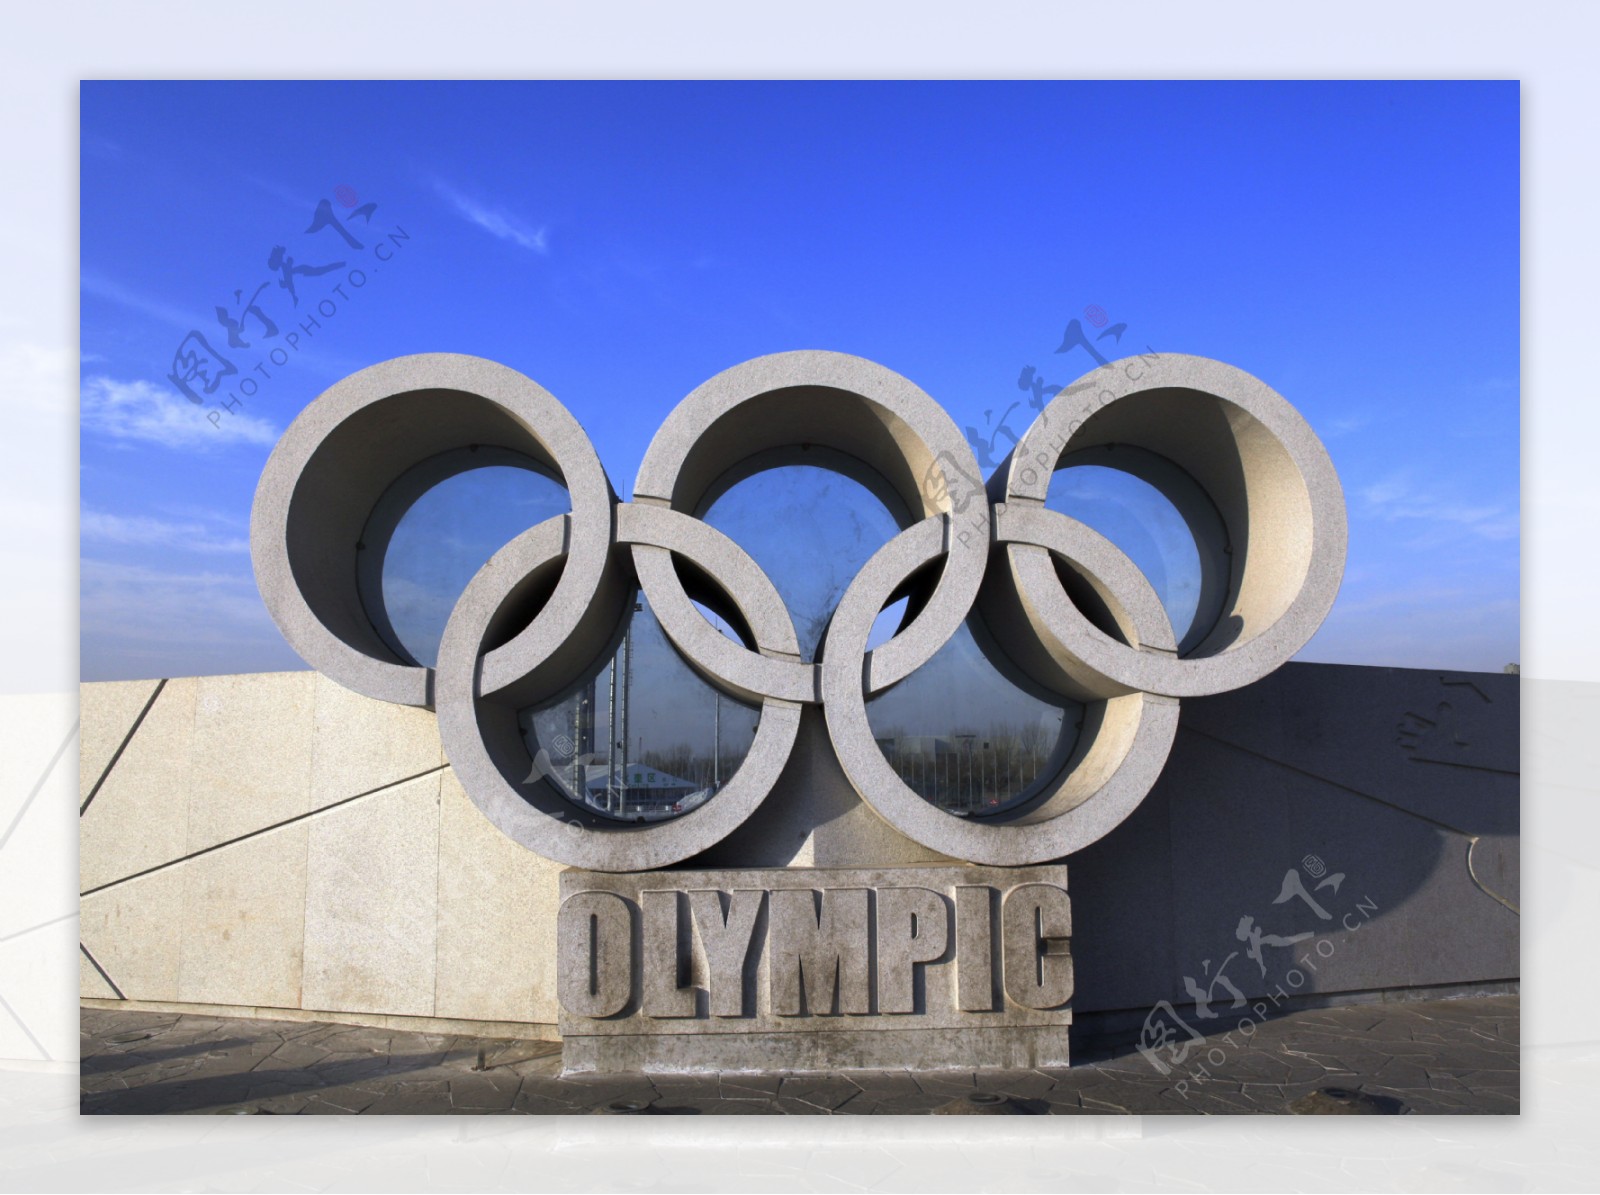 奥林匹克公园五环标图片